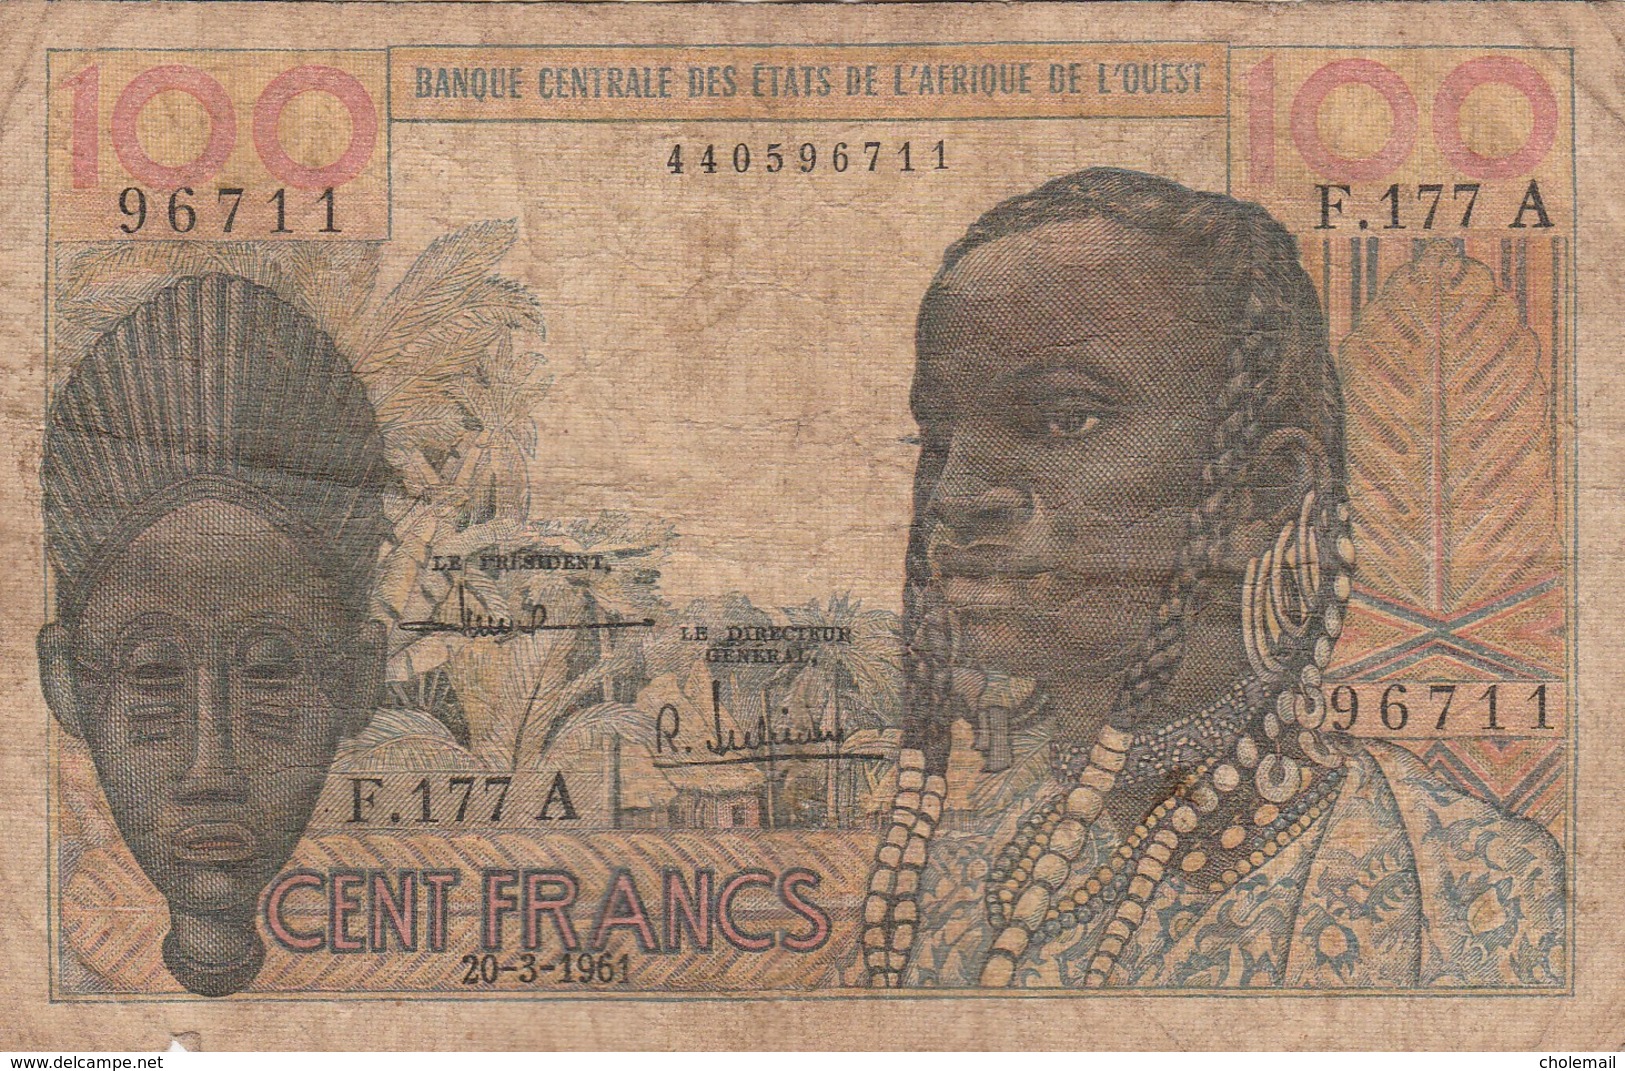 BCEAO - 100 F - Banque Centrale Des Etats De L'Afrique De L'Ouest - 20/03/1961 - West African States